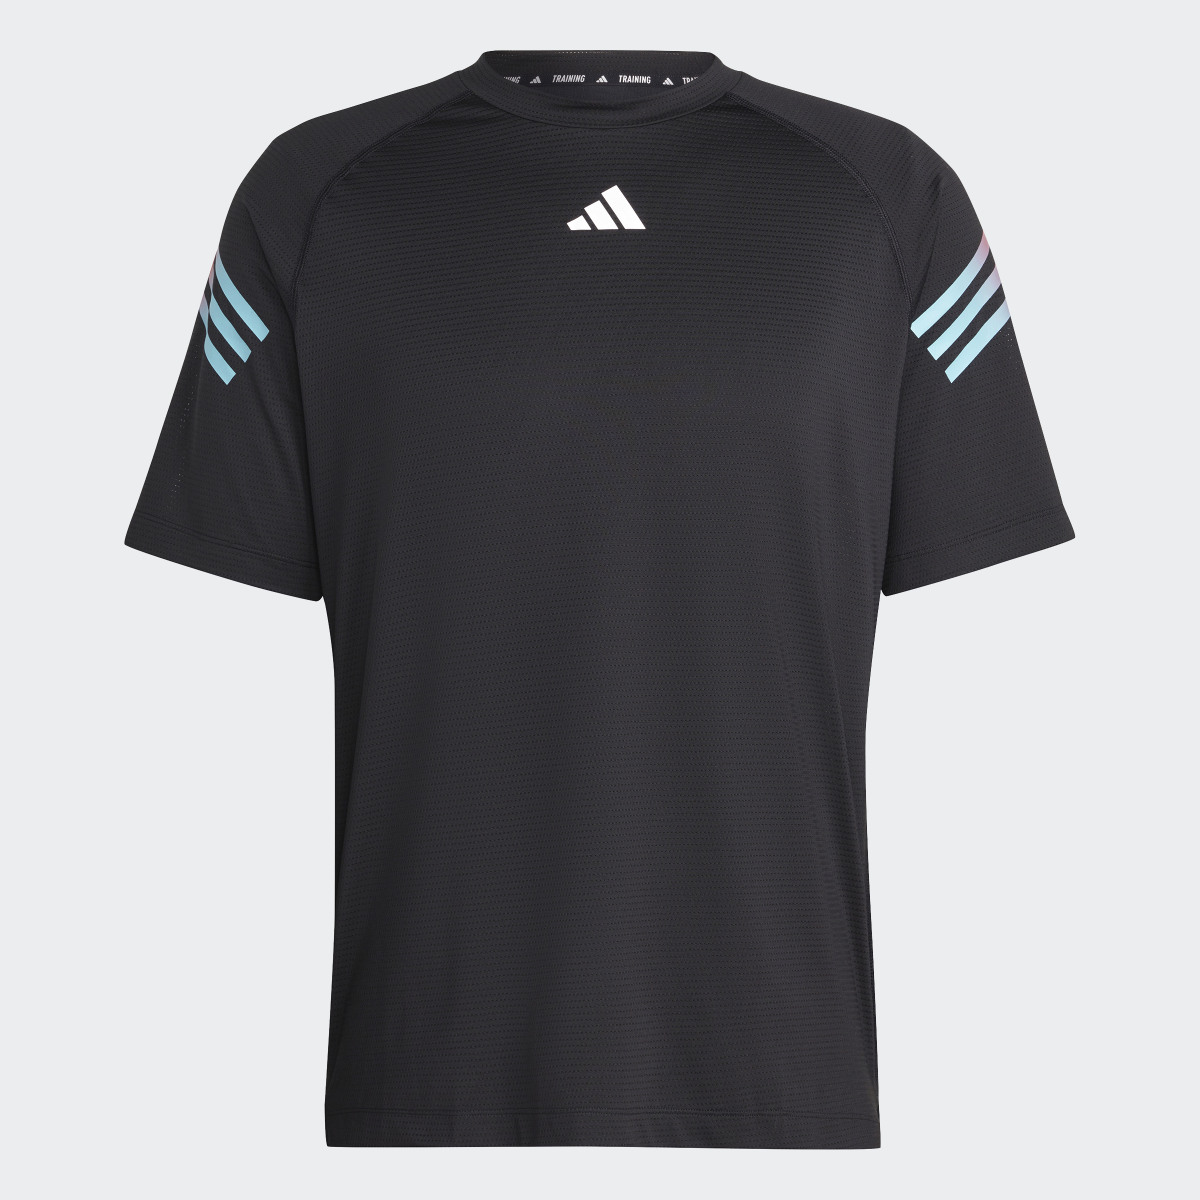 Adidas Train Icons 3-Stripes Training T-Shirt. 5